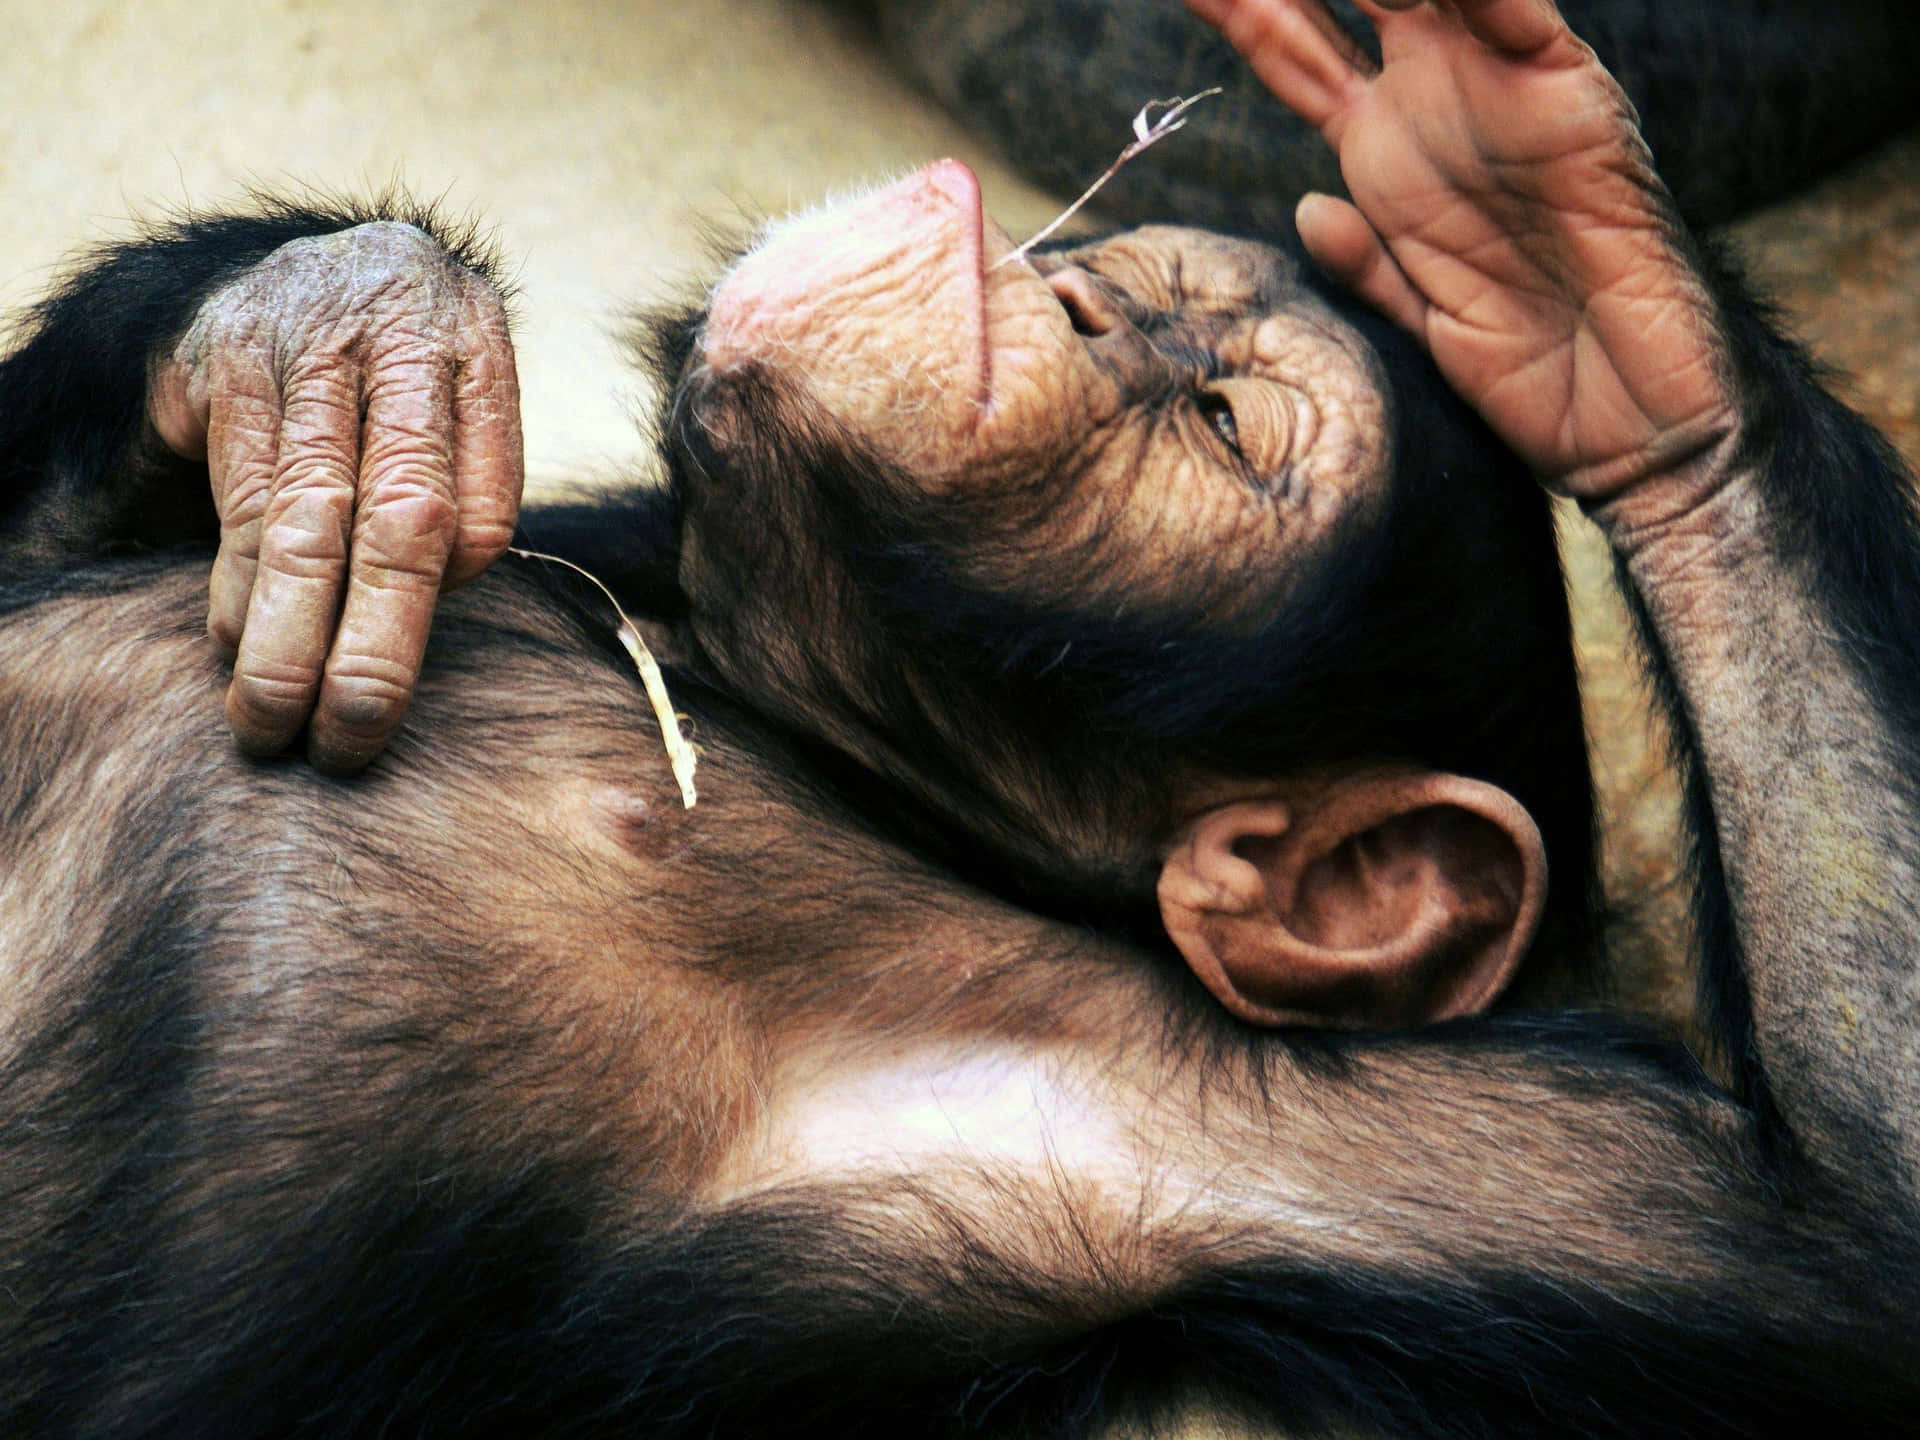 A Chimpanzee Laying On Its Back